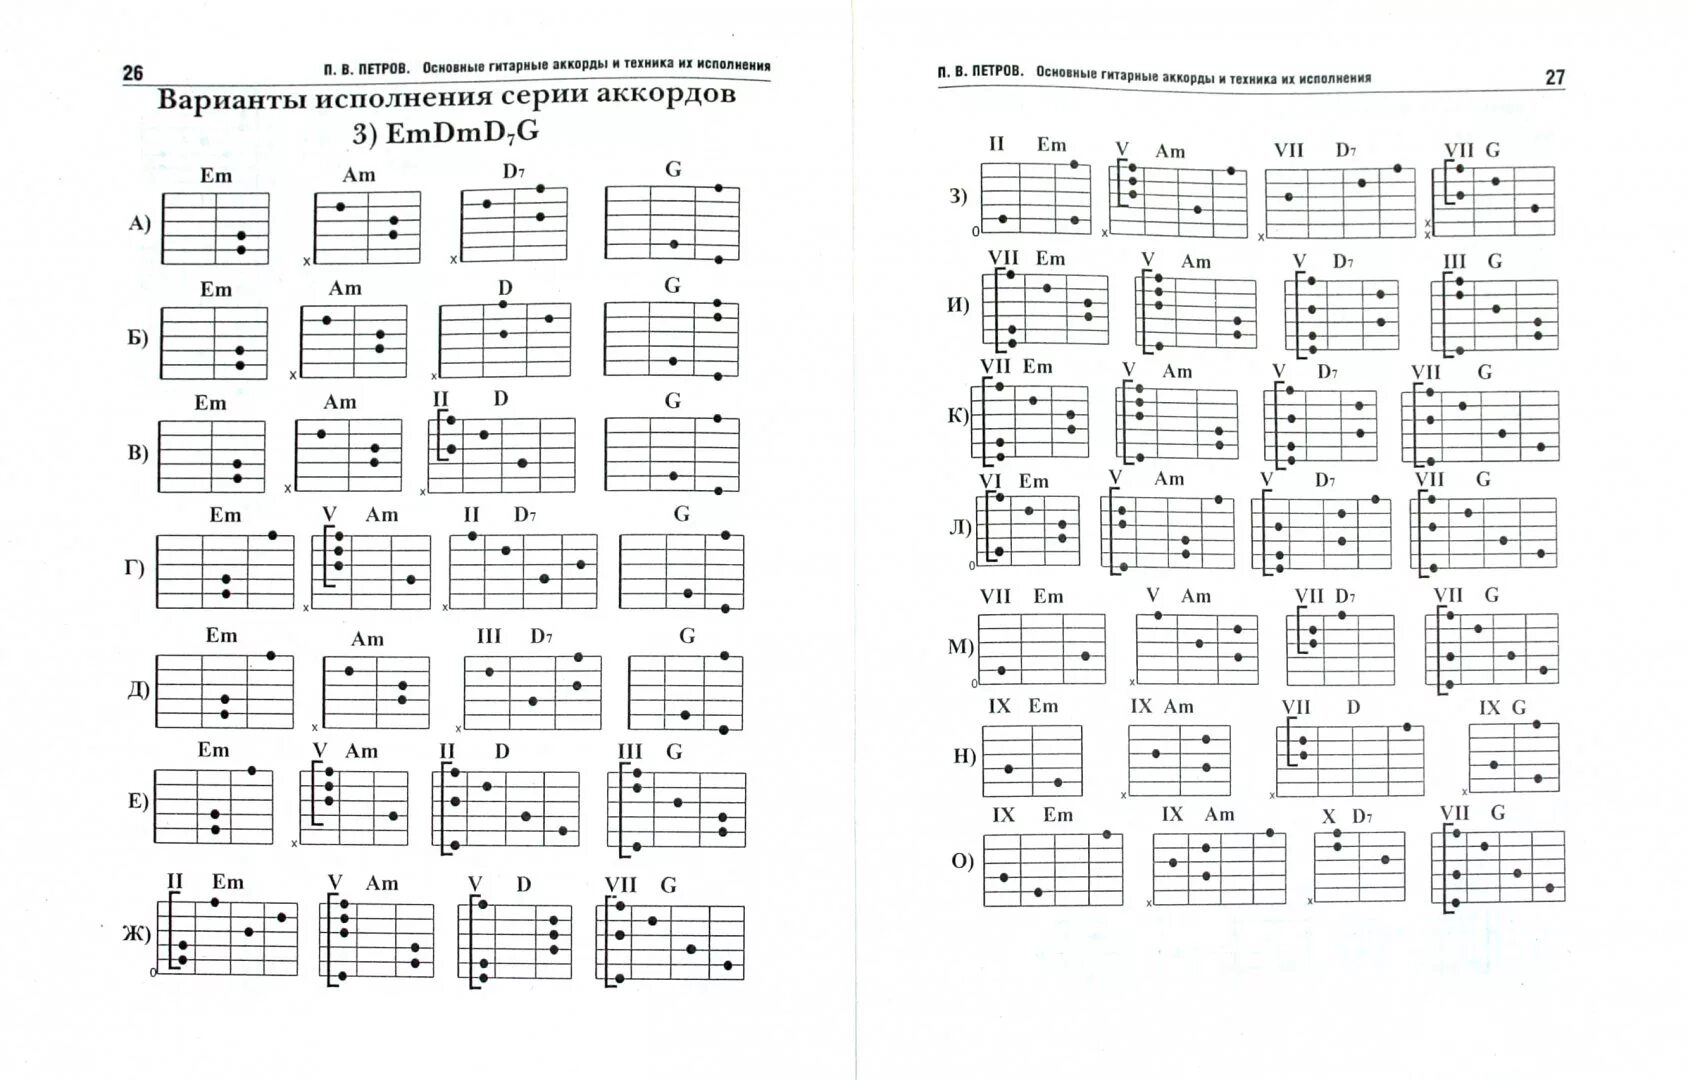 Таблица аккордов для гитары 6 струн для начинающих. Гитарные аккорды таблица для начинающих. Аккорды на 6 струнной гитаре. Таблица простых аккордов для гитары 6 струн.